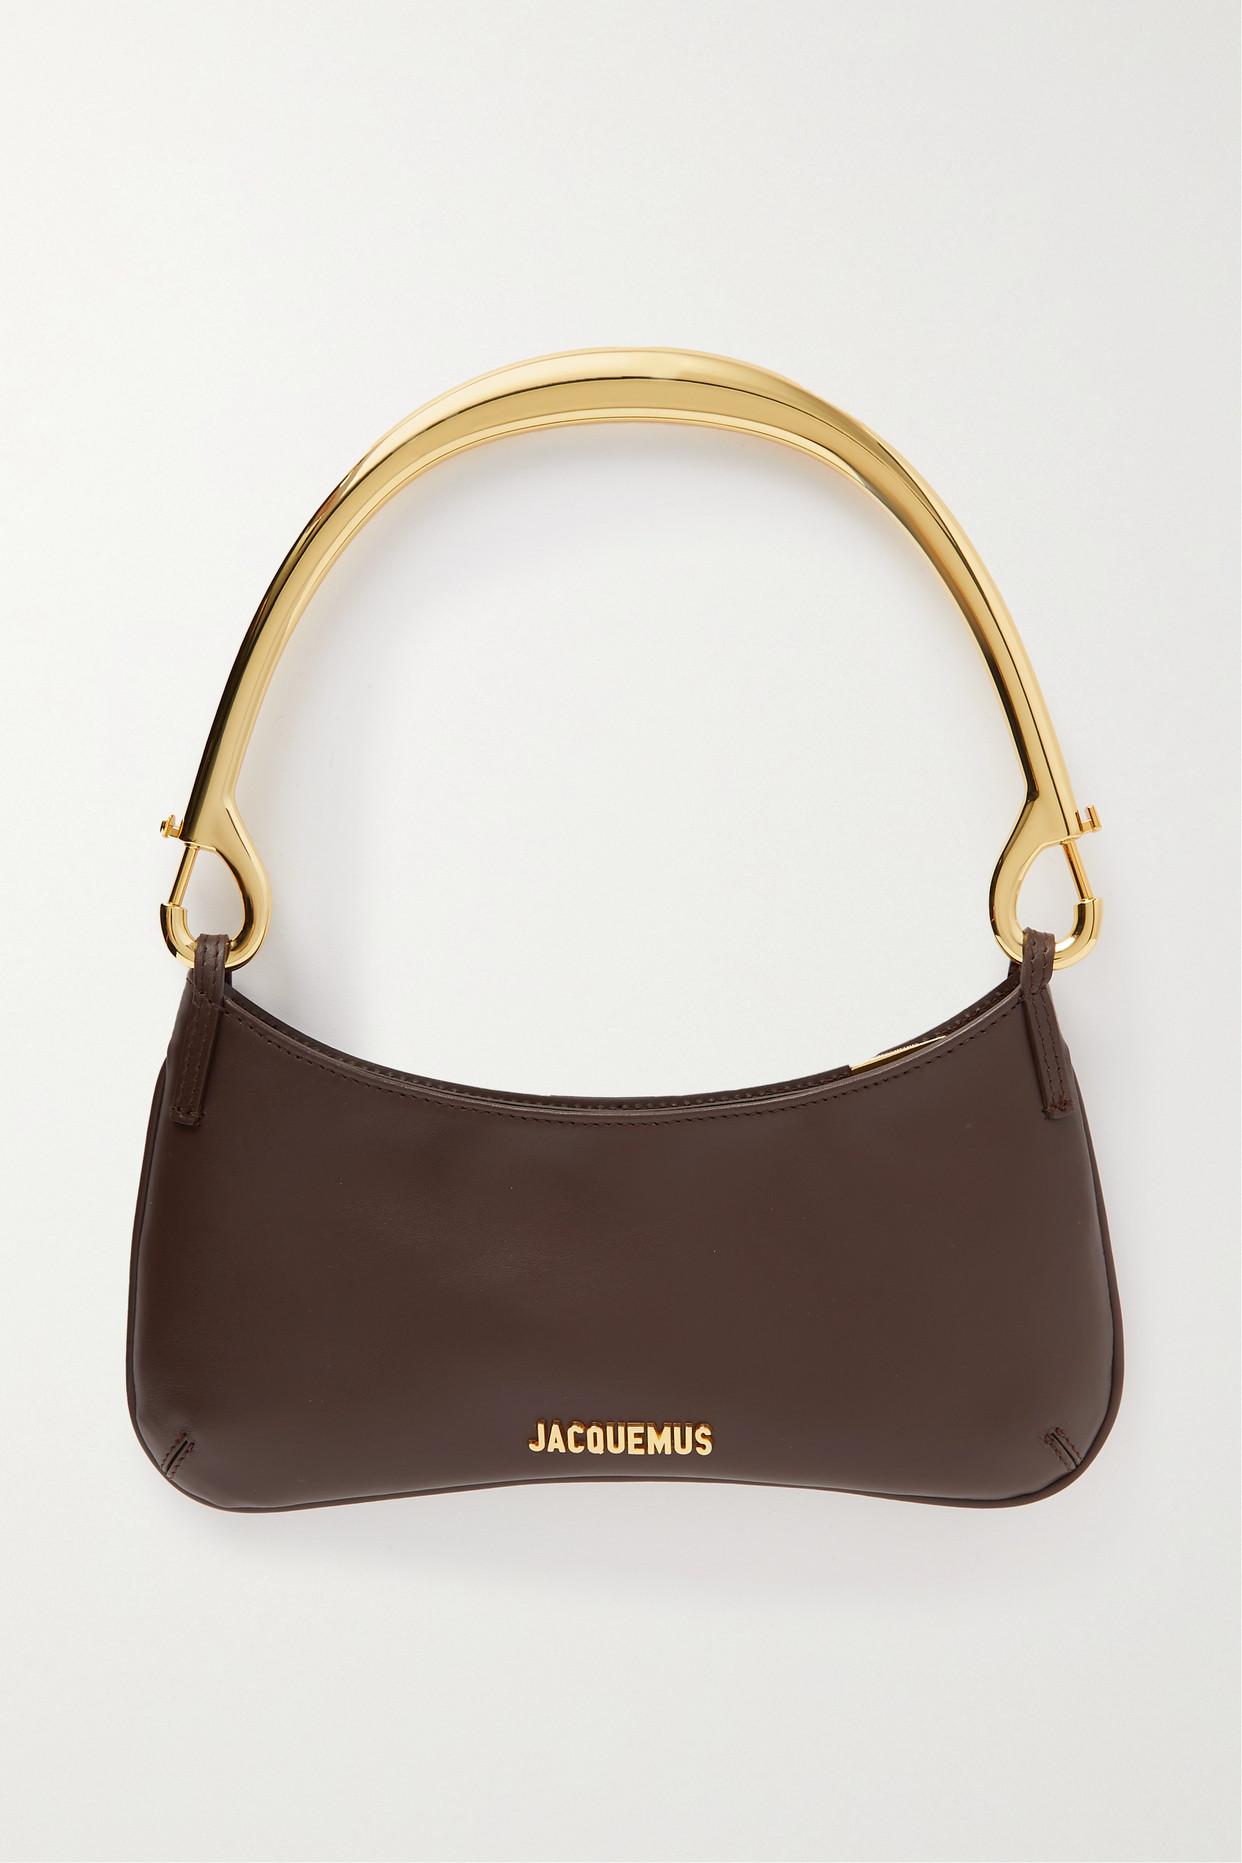 Jacquemus Le Bisou Mousqueton Leather Shoulder Bag in Brown | Lyst